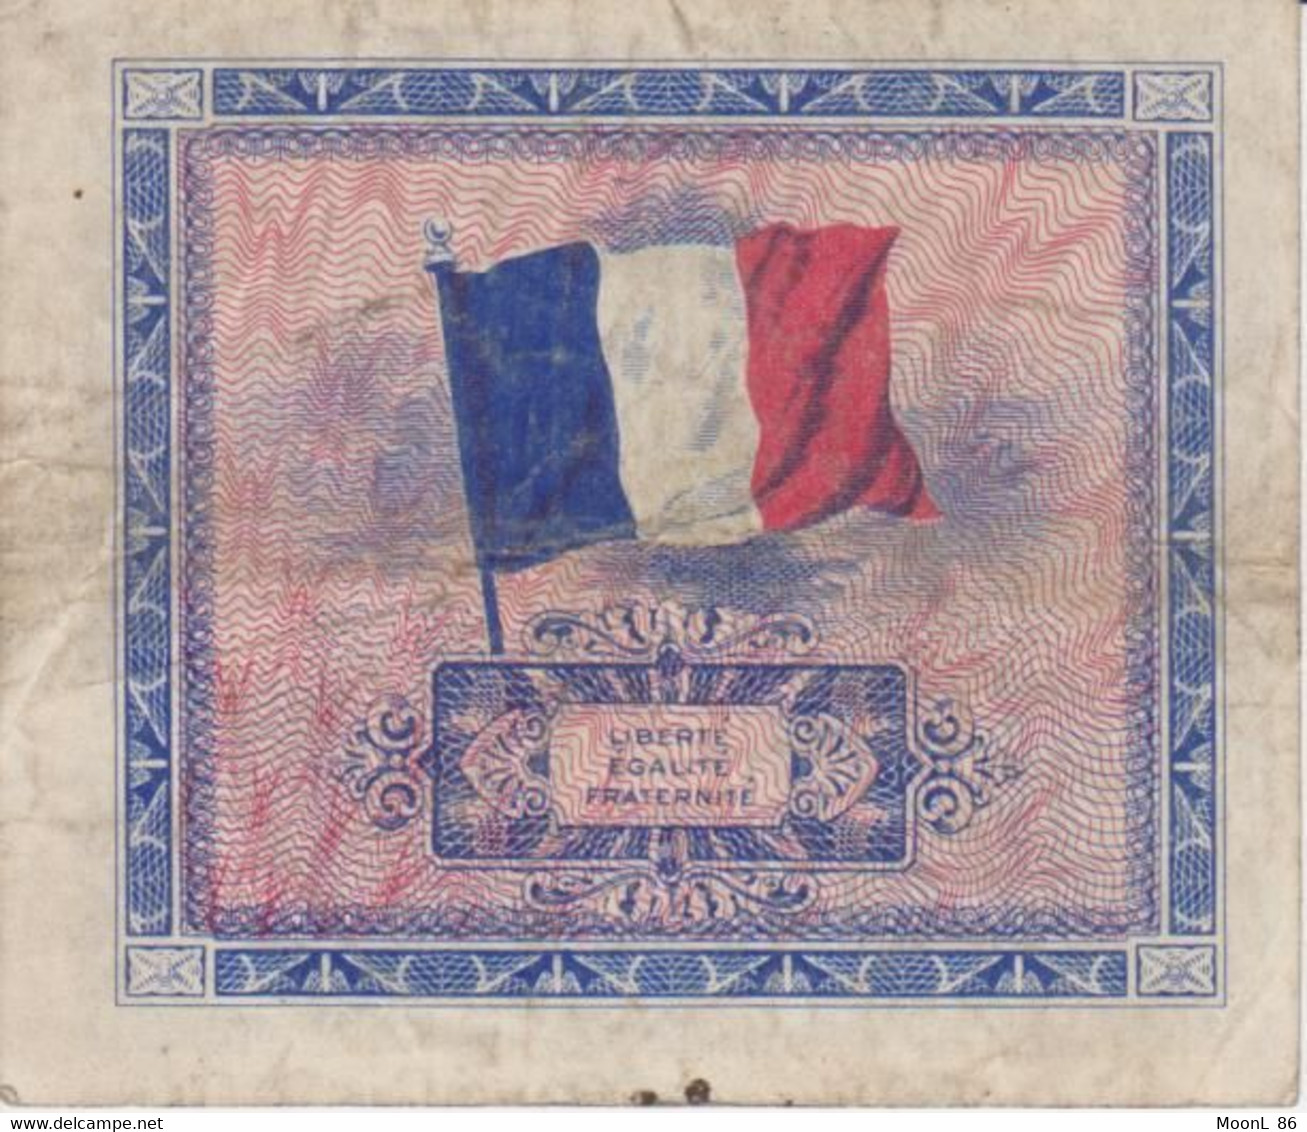 1944 -Billet 2 Francs Série De 1944 FRANCE Préparer Par Les USA Pour La Libération - DRAPEAU LIBERTE EGALITE FRATERNITE - 1944 Flag/France